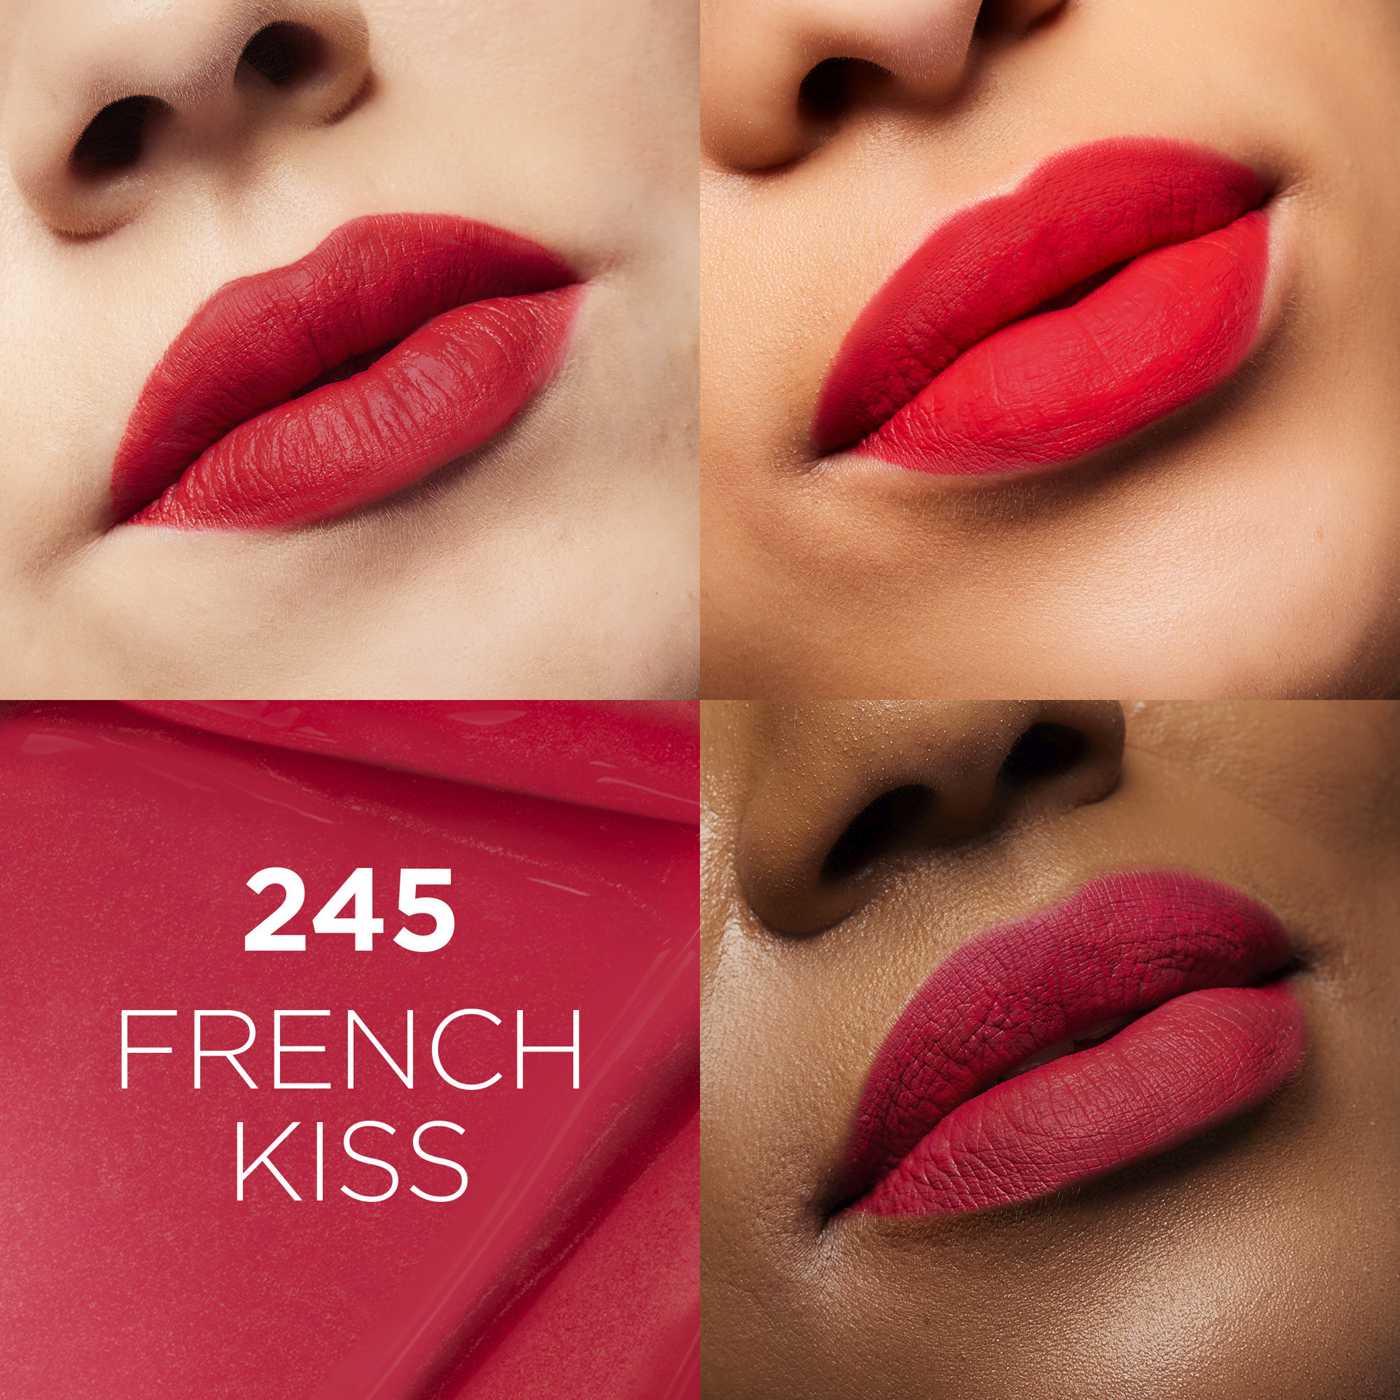 L'Oréal Paris Infallible Le Matte Resistance Liquid Lipstick - French Kiss; image 2 of 6